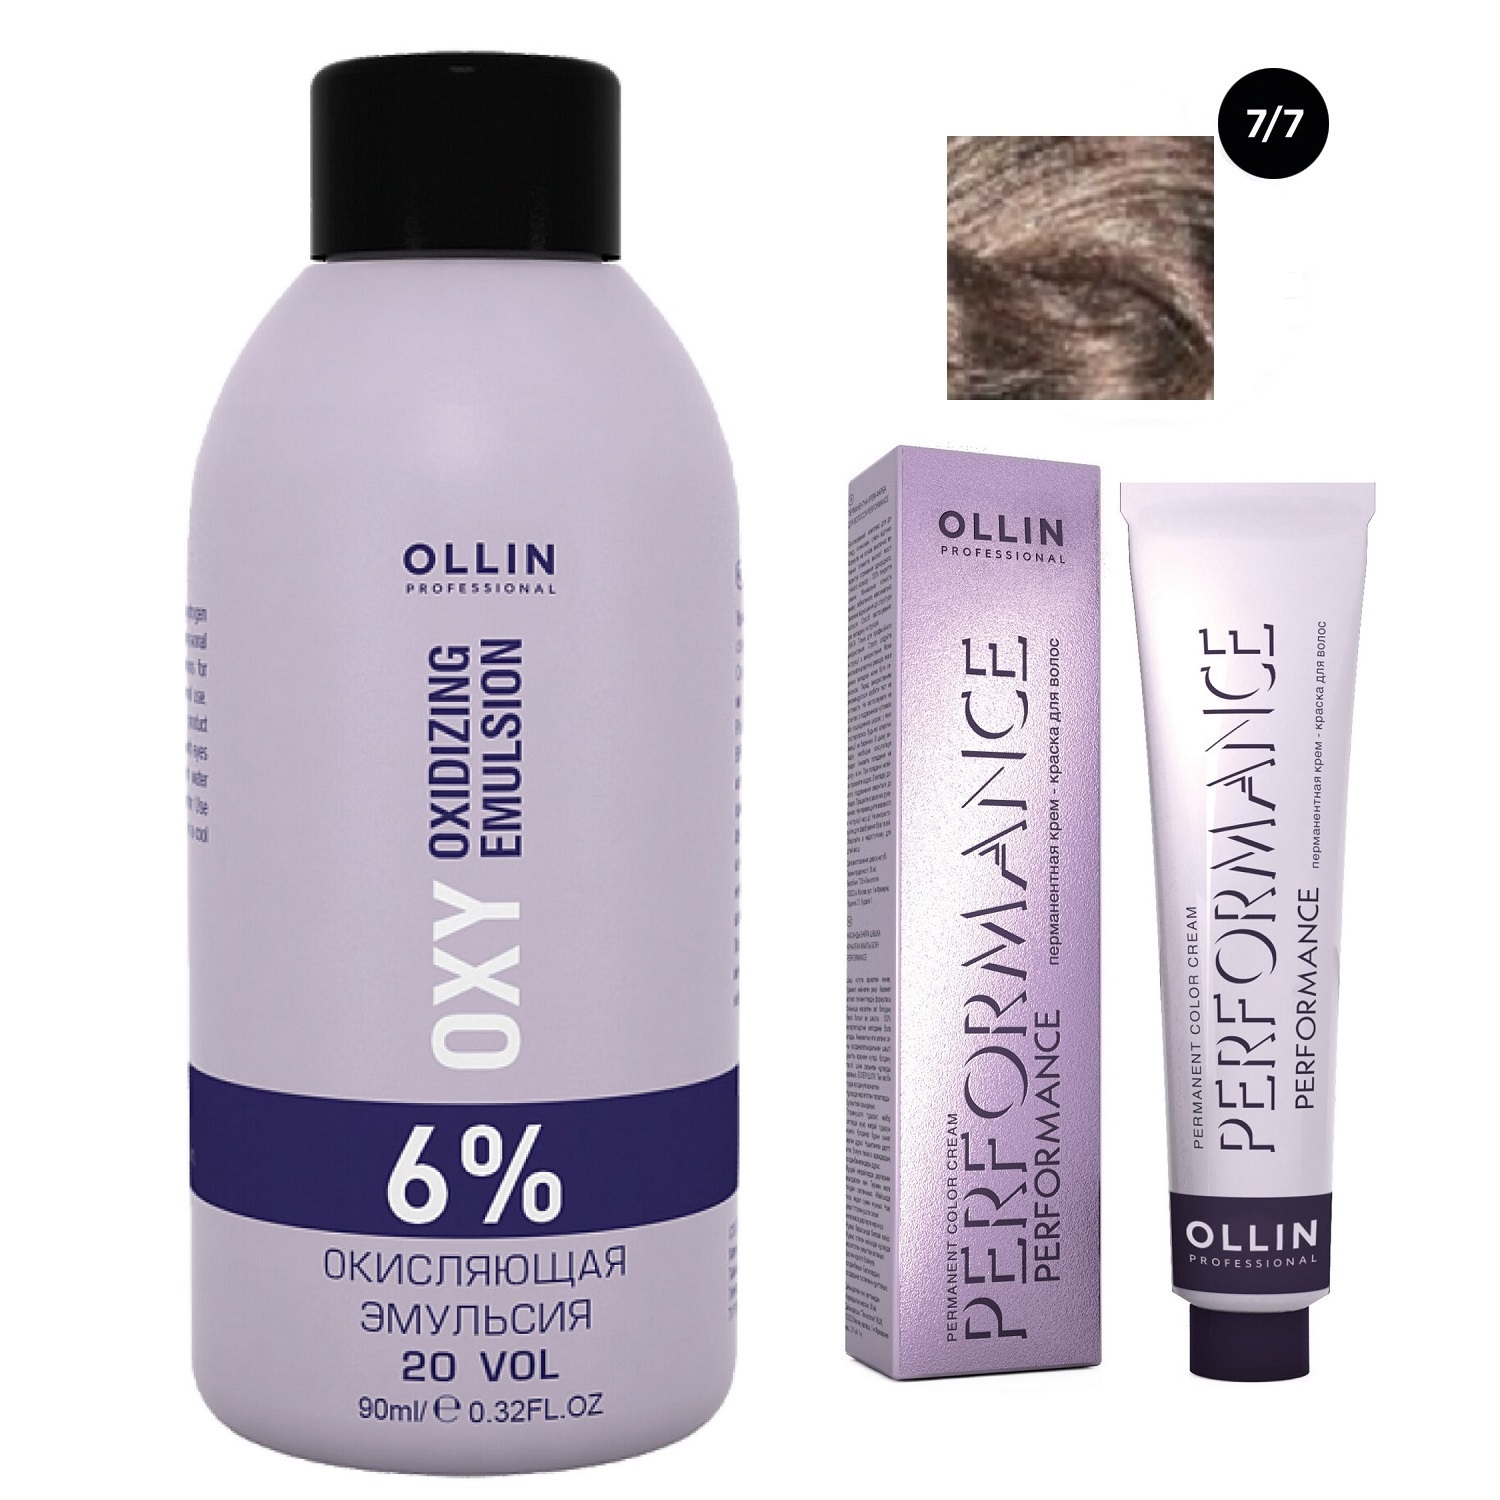 Ollin Professional Набор Перманентная крем-краска для волос Ollin Performance оттенок 7/7 русый коричневый 60 мл + Окисляющая эмульсия Oxy 6% 90 мл (Ollin Professional, Performance) цена и фото